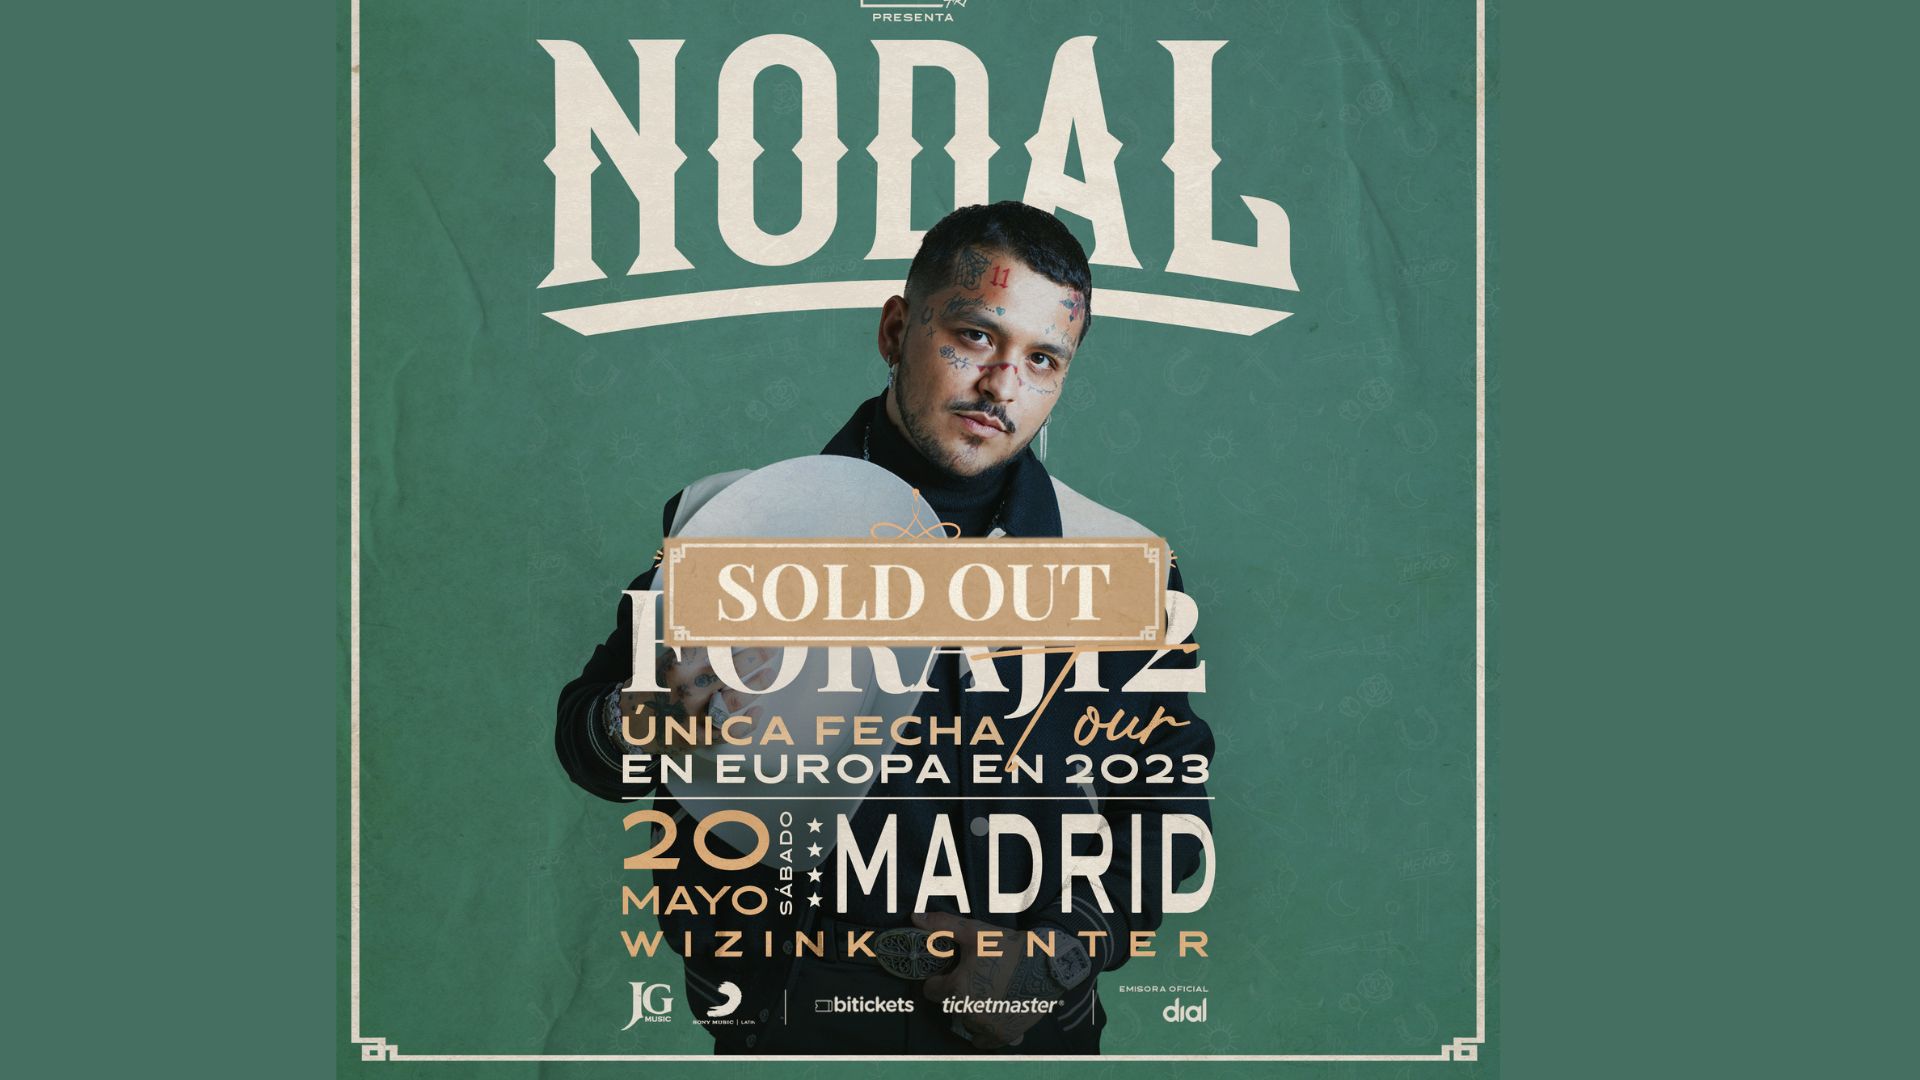 Christian Nodal anuncia el sold out de su concierto en el WiZink Center